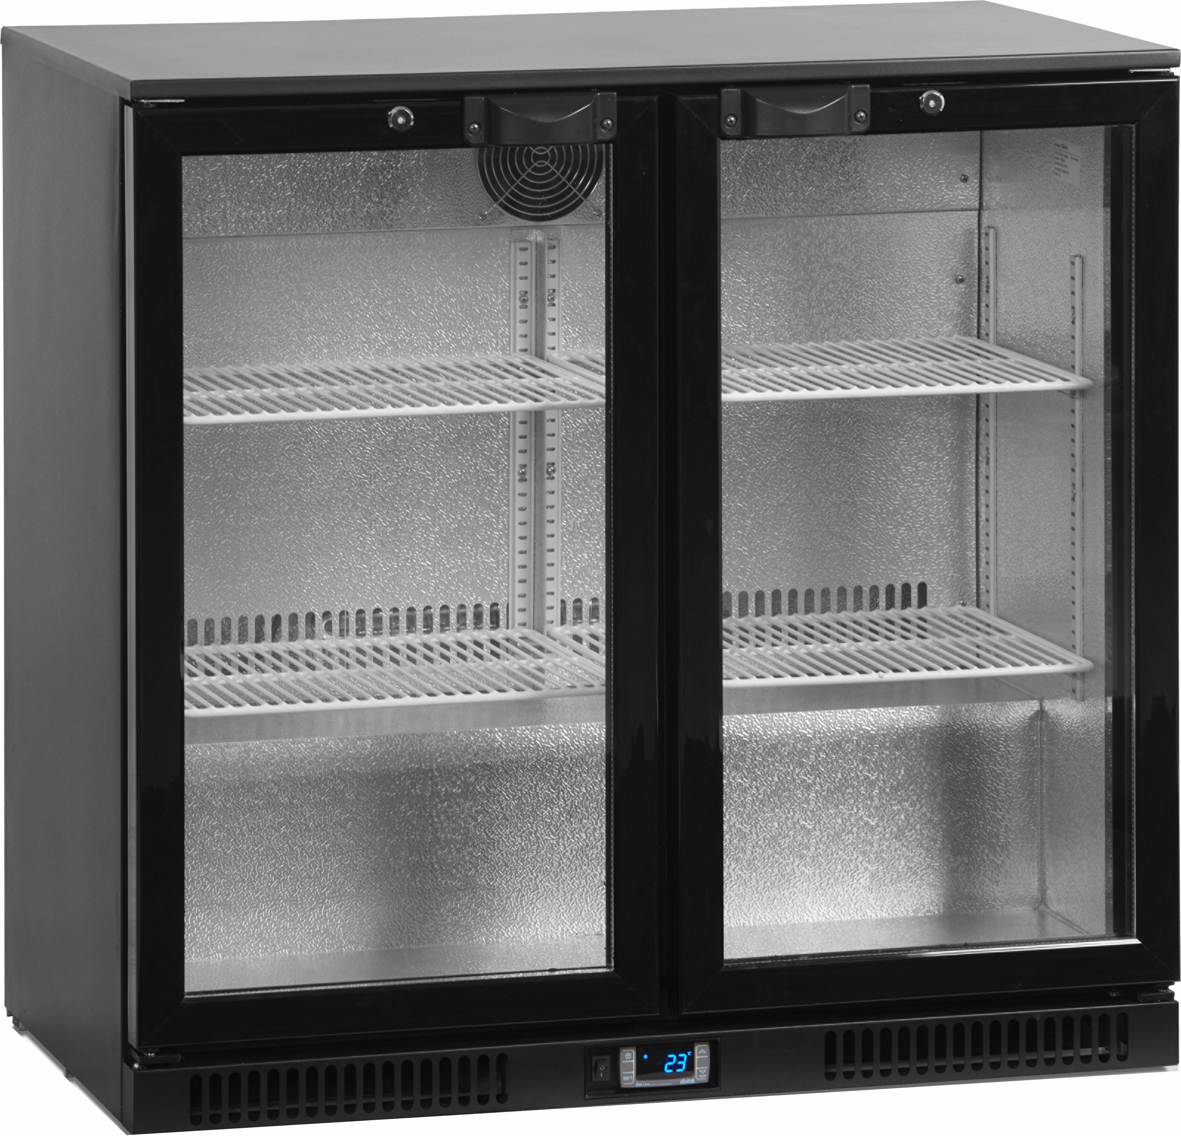 Kühlschränke günstig online kaufen